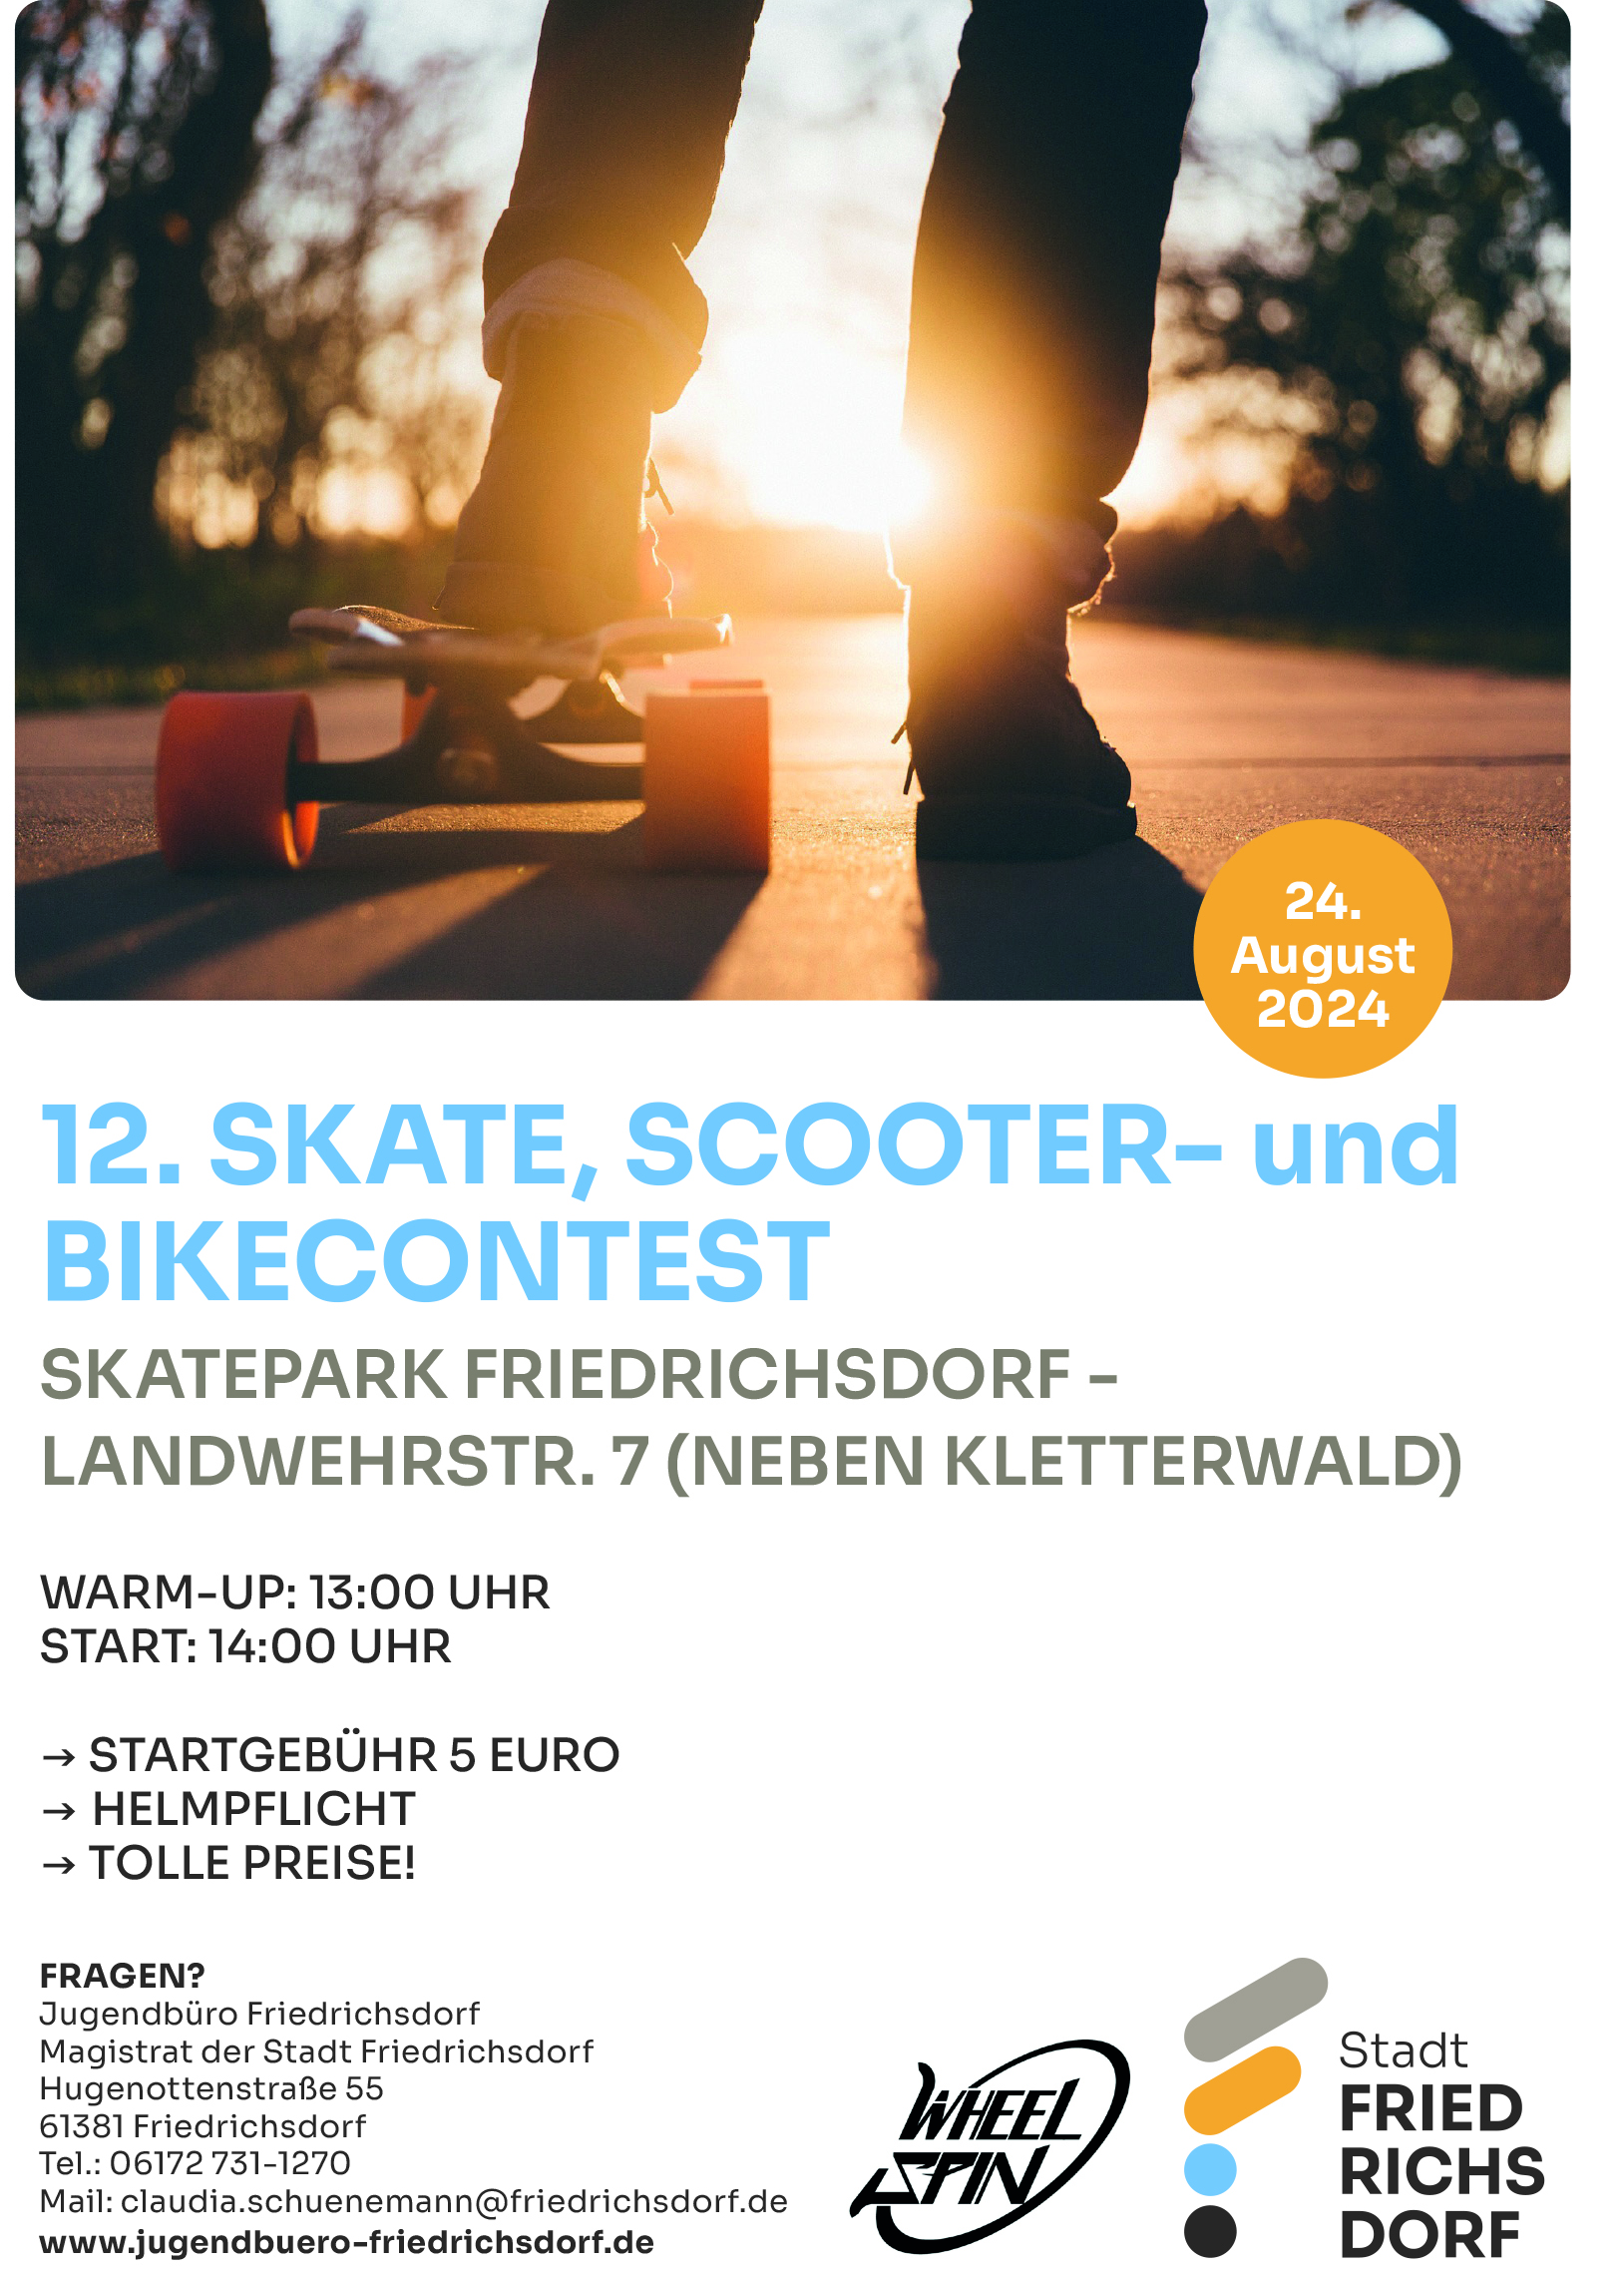 12. Skate, Scooter- und Bikecontest am 24. August 2024